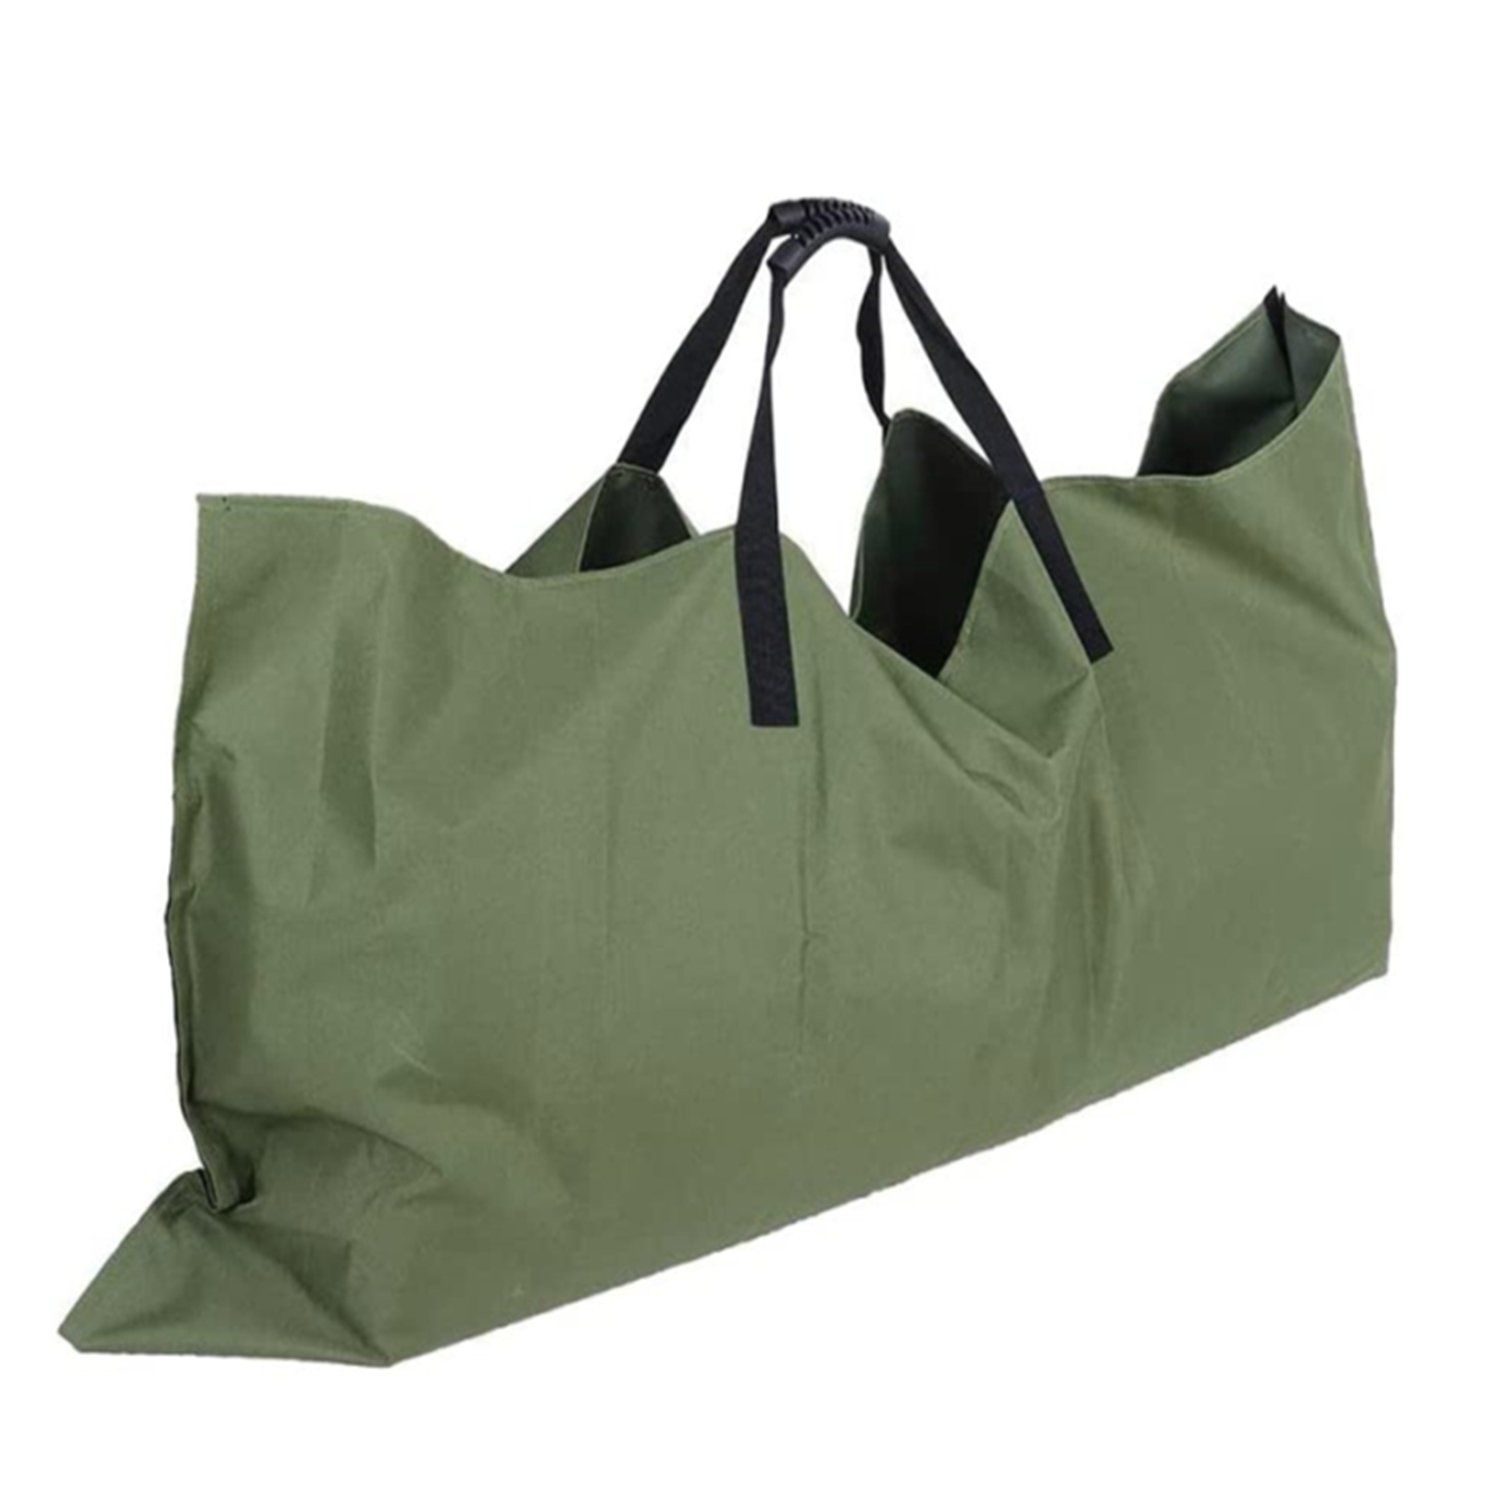 Large Heavy Duty Garden Lawn Leaf Bag